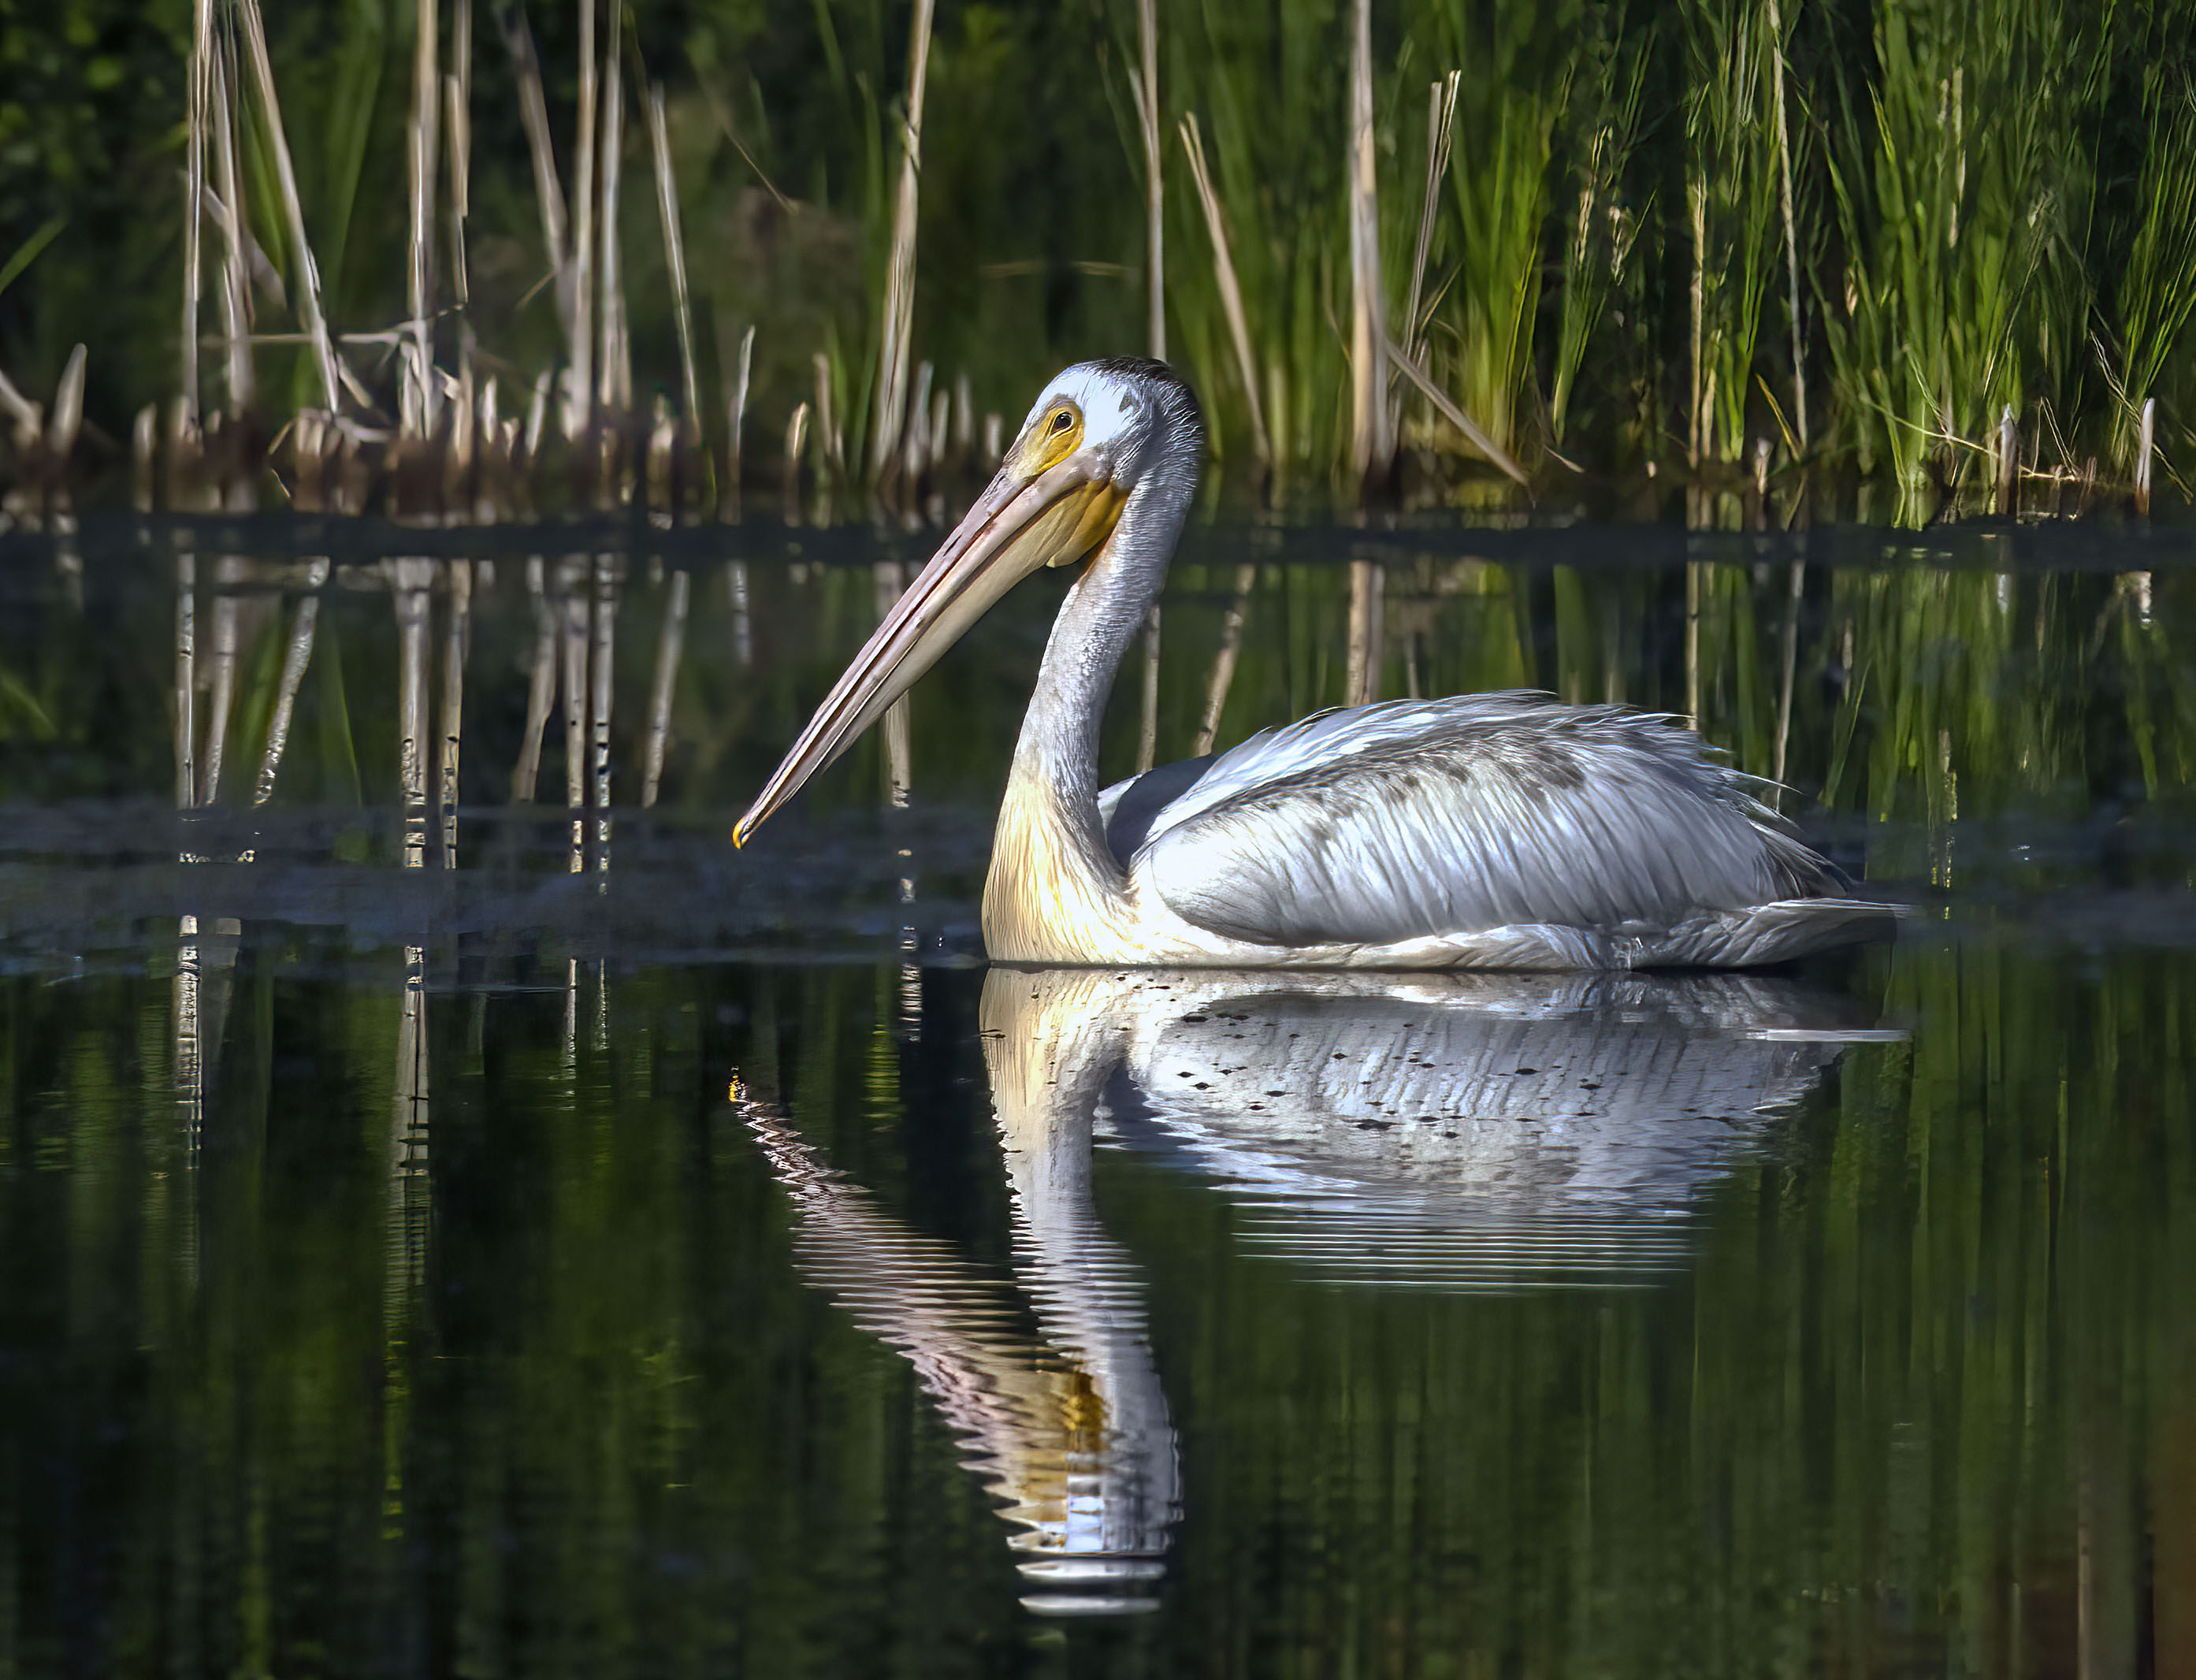 Colorado Pelican by Bob Scott